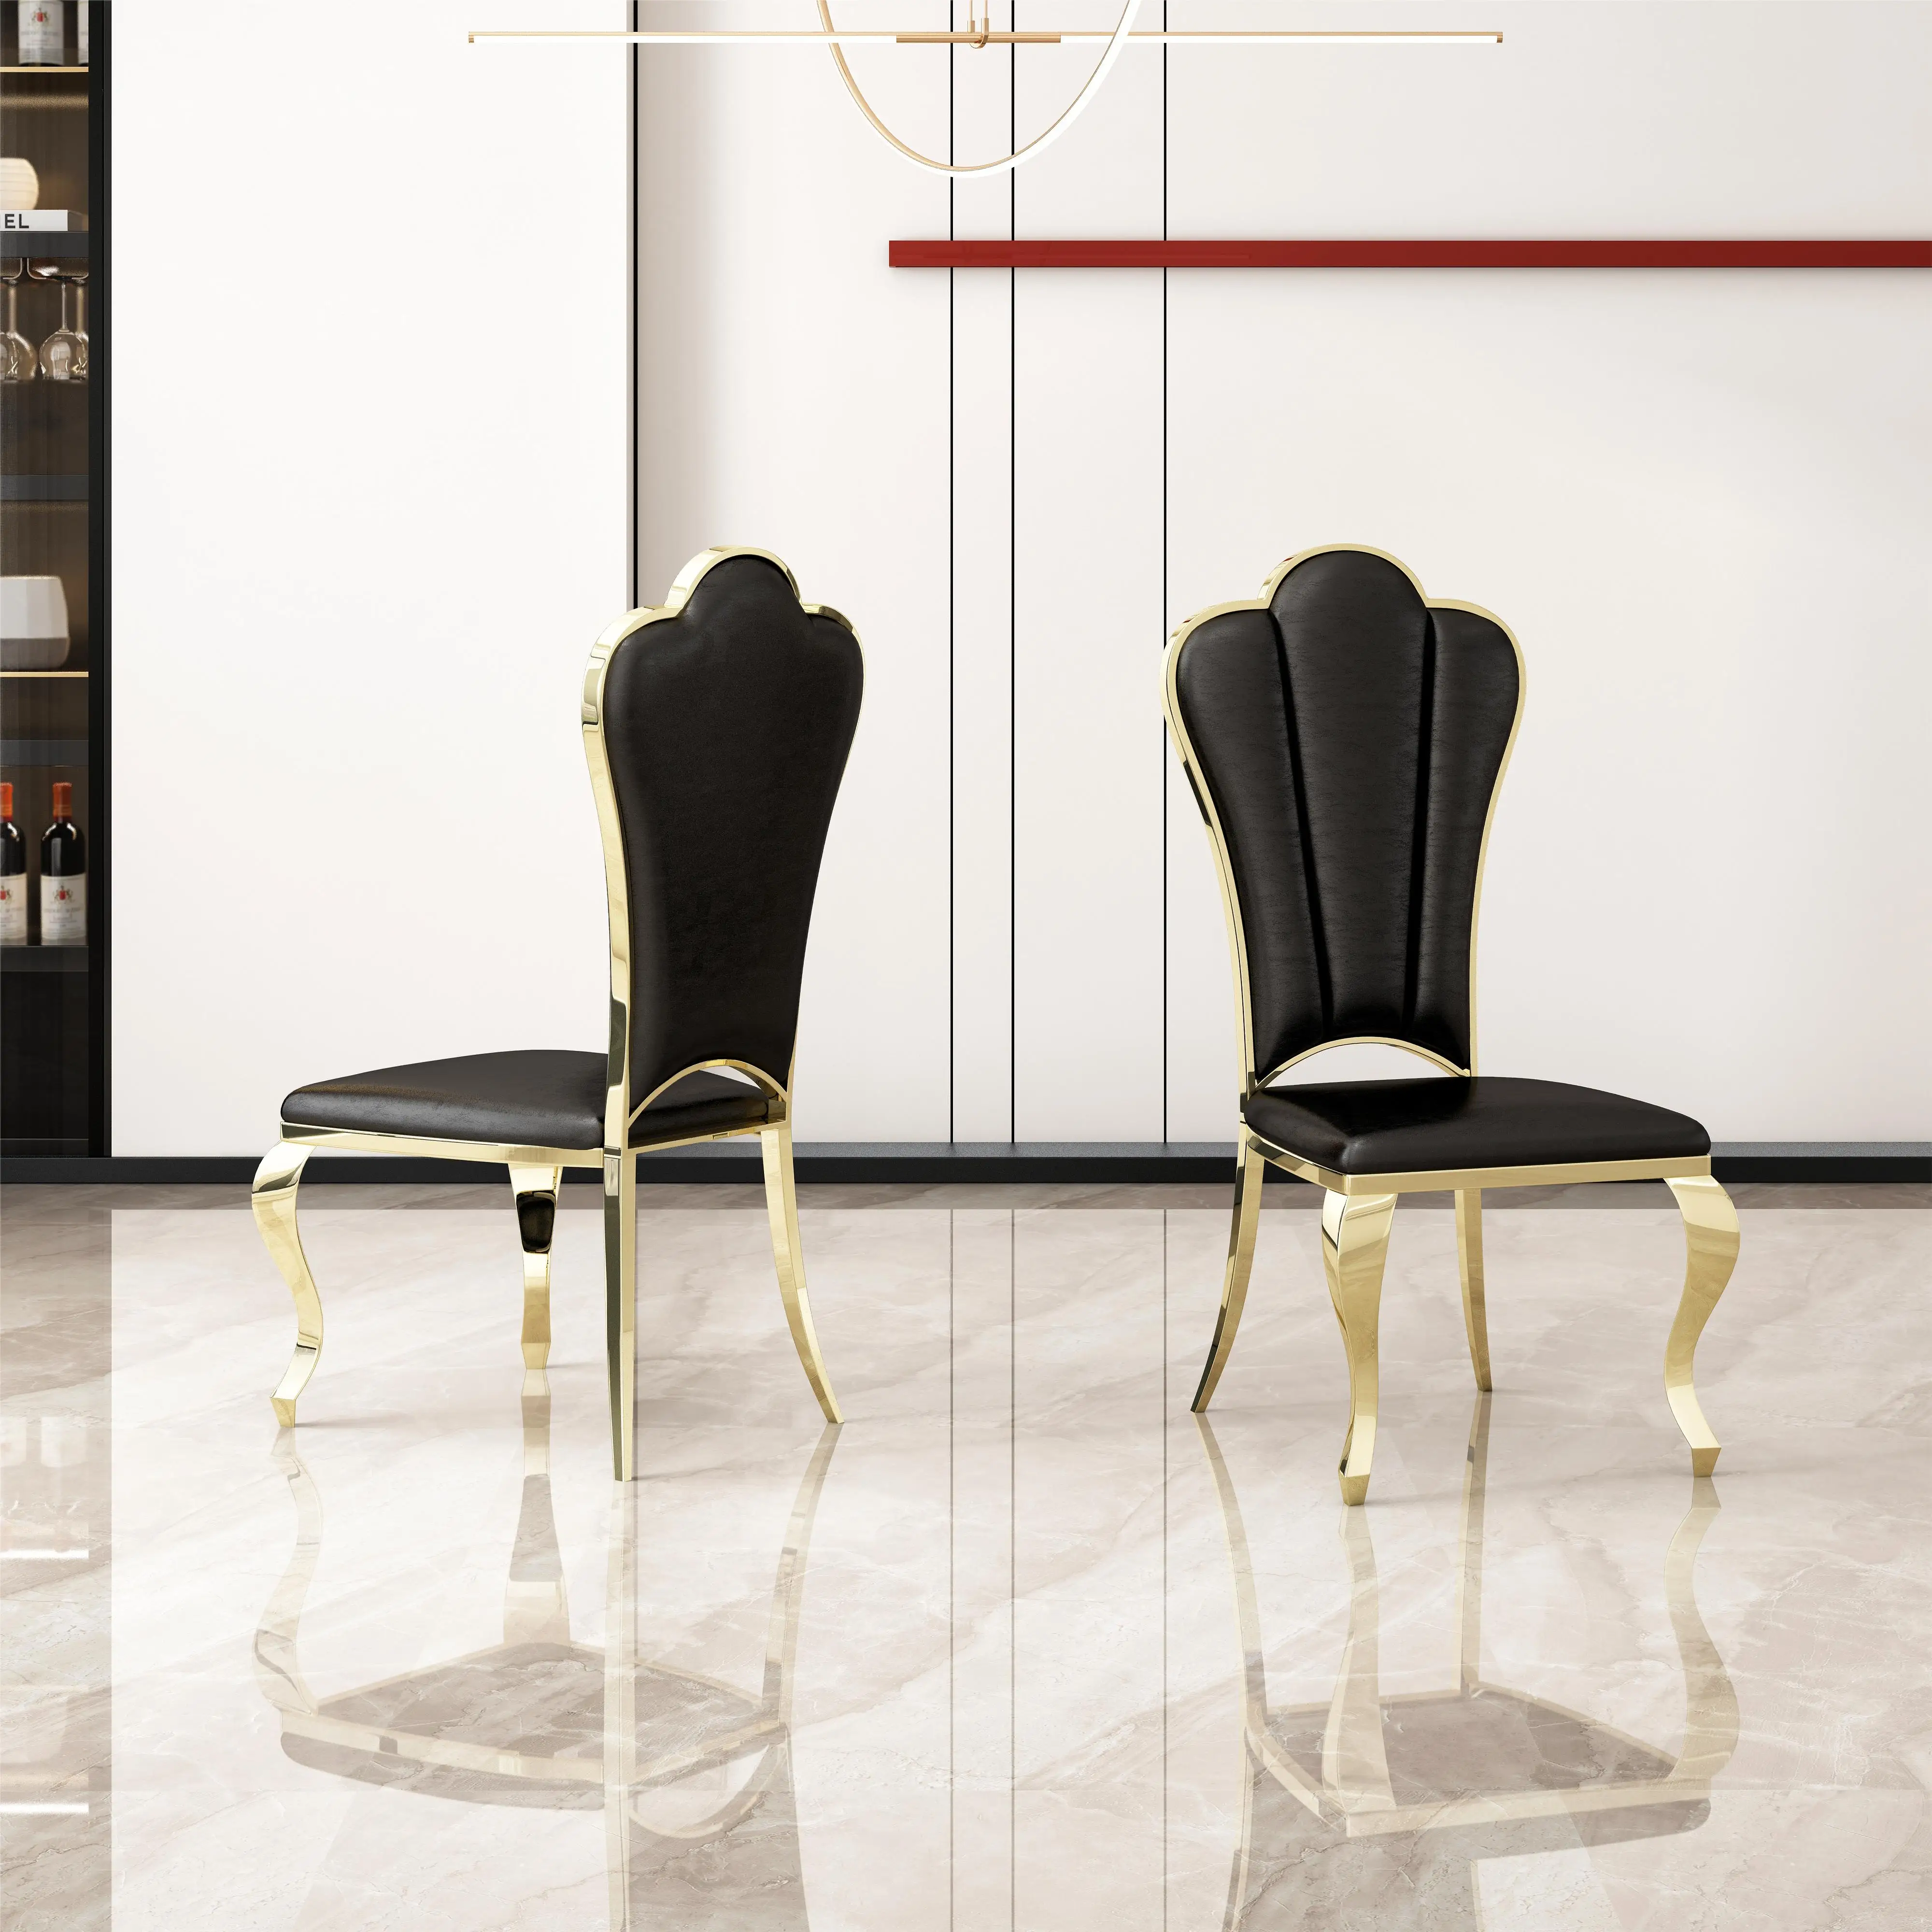 

Набор из 2 современных обеденных стульев из искусственной кожи, уникальный дизайн спинки с полосатым безрукавным стулом